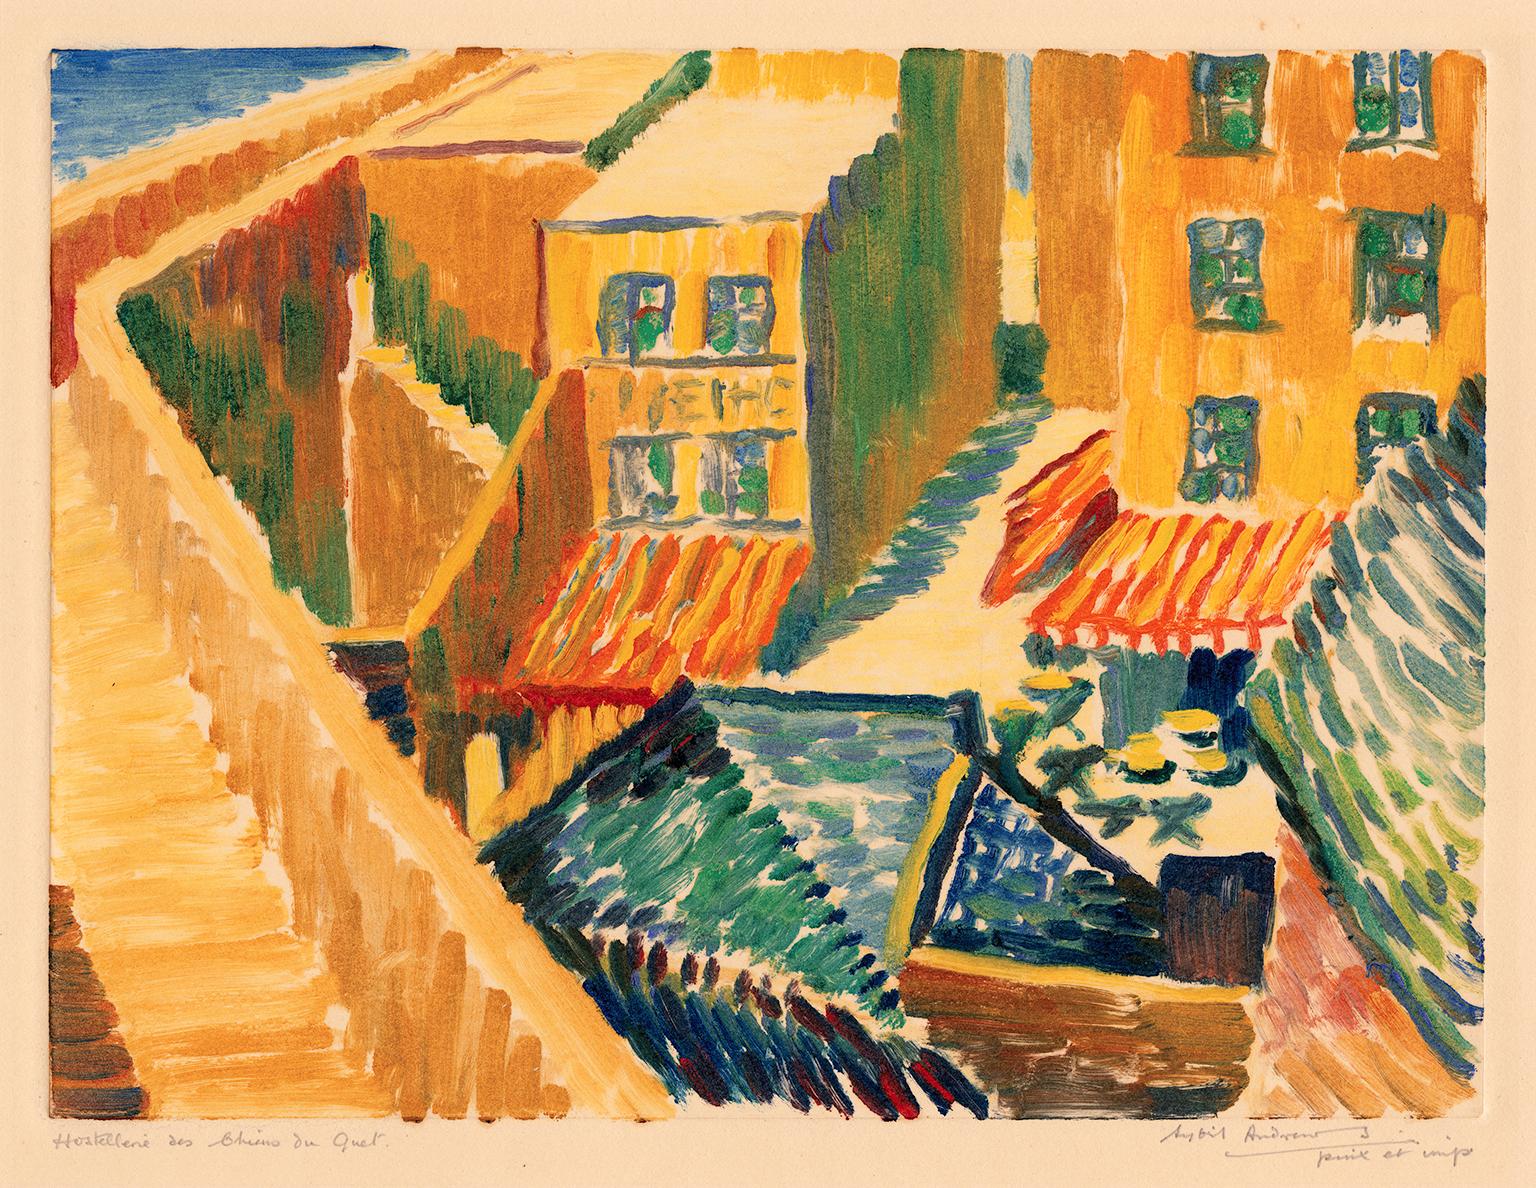 Hostellerie des Chiens du Guet" - Britischer Impressionismus der 1920er Jahre